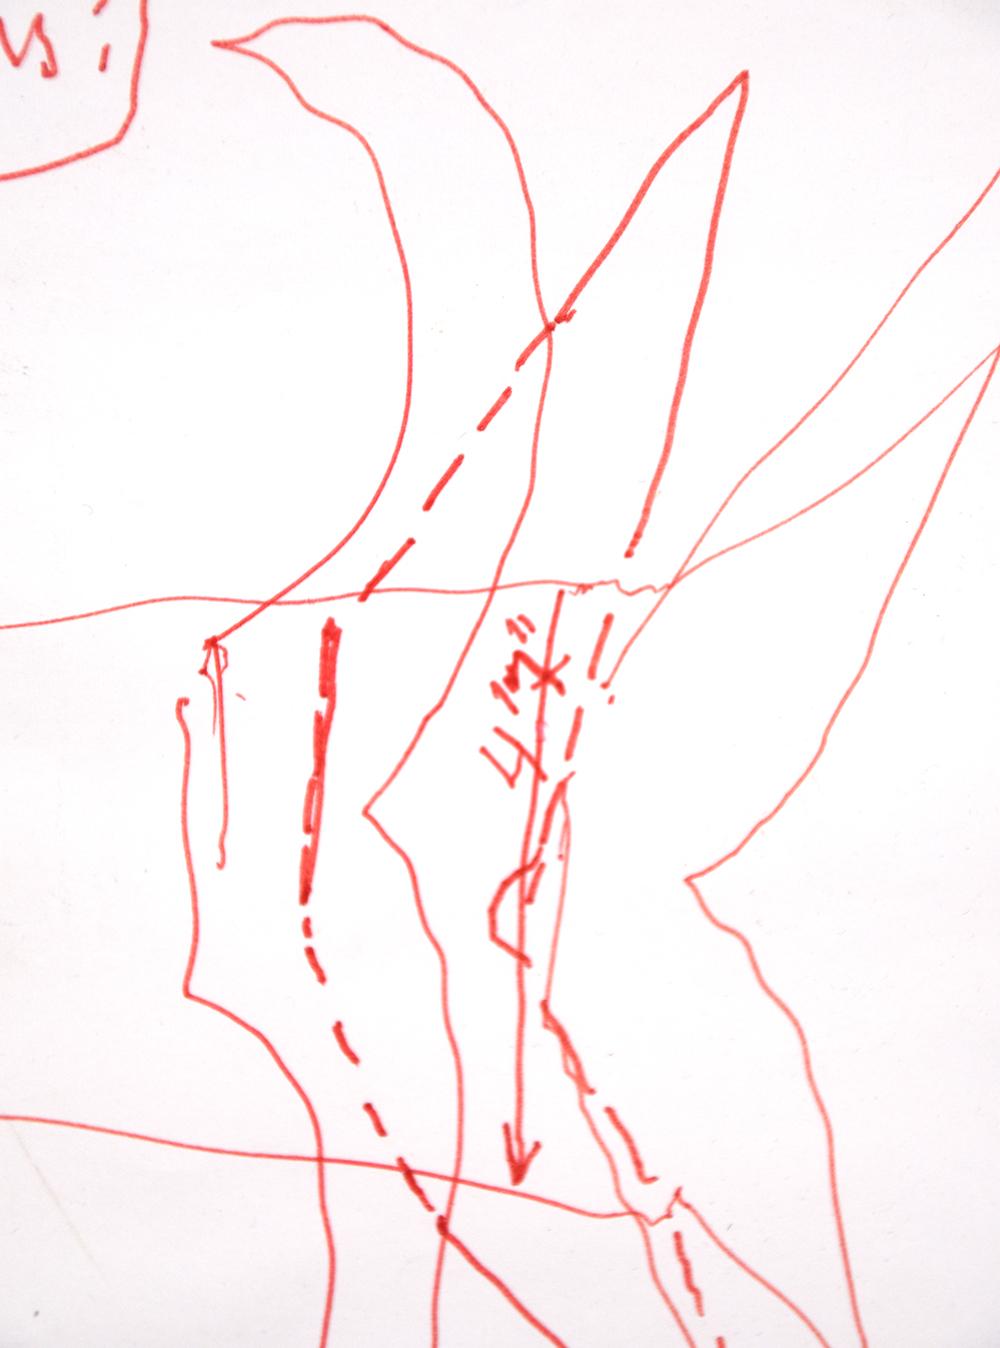 Cette œuvre est enregistrée comme une œuvre authentique d'Alexander Calder (1898 - 1976) dans les archives de la Fondation Calder (NY), sous le numéro de demande A.24492.  Créé en 1967, ce dessin original au stylo et à l'encre rouge sur papier porte